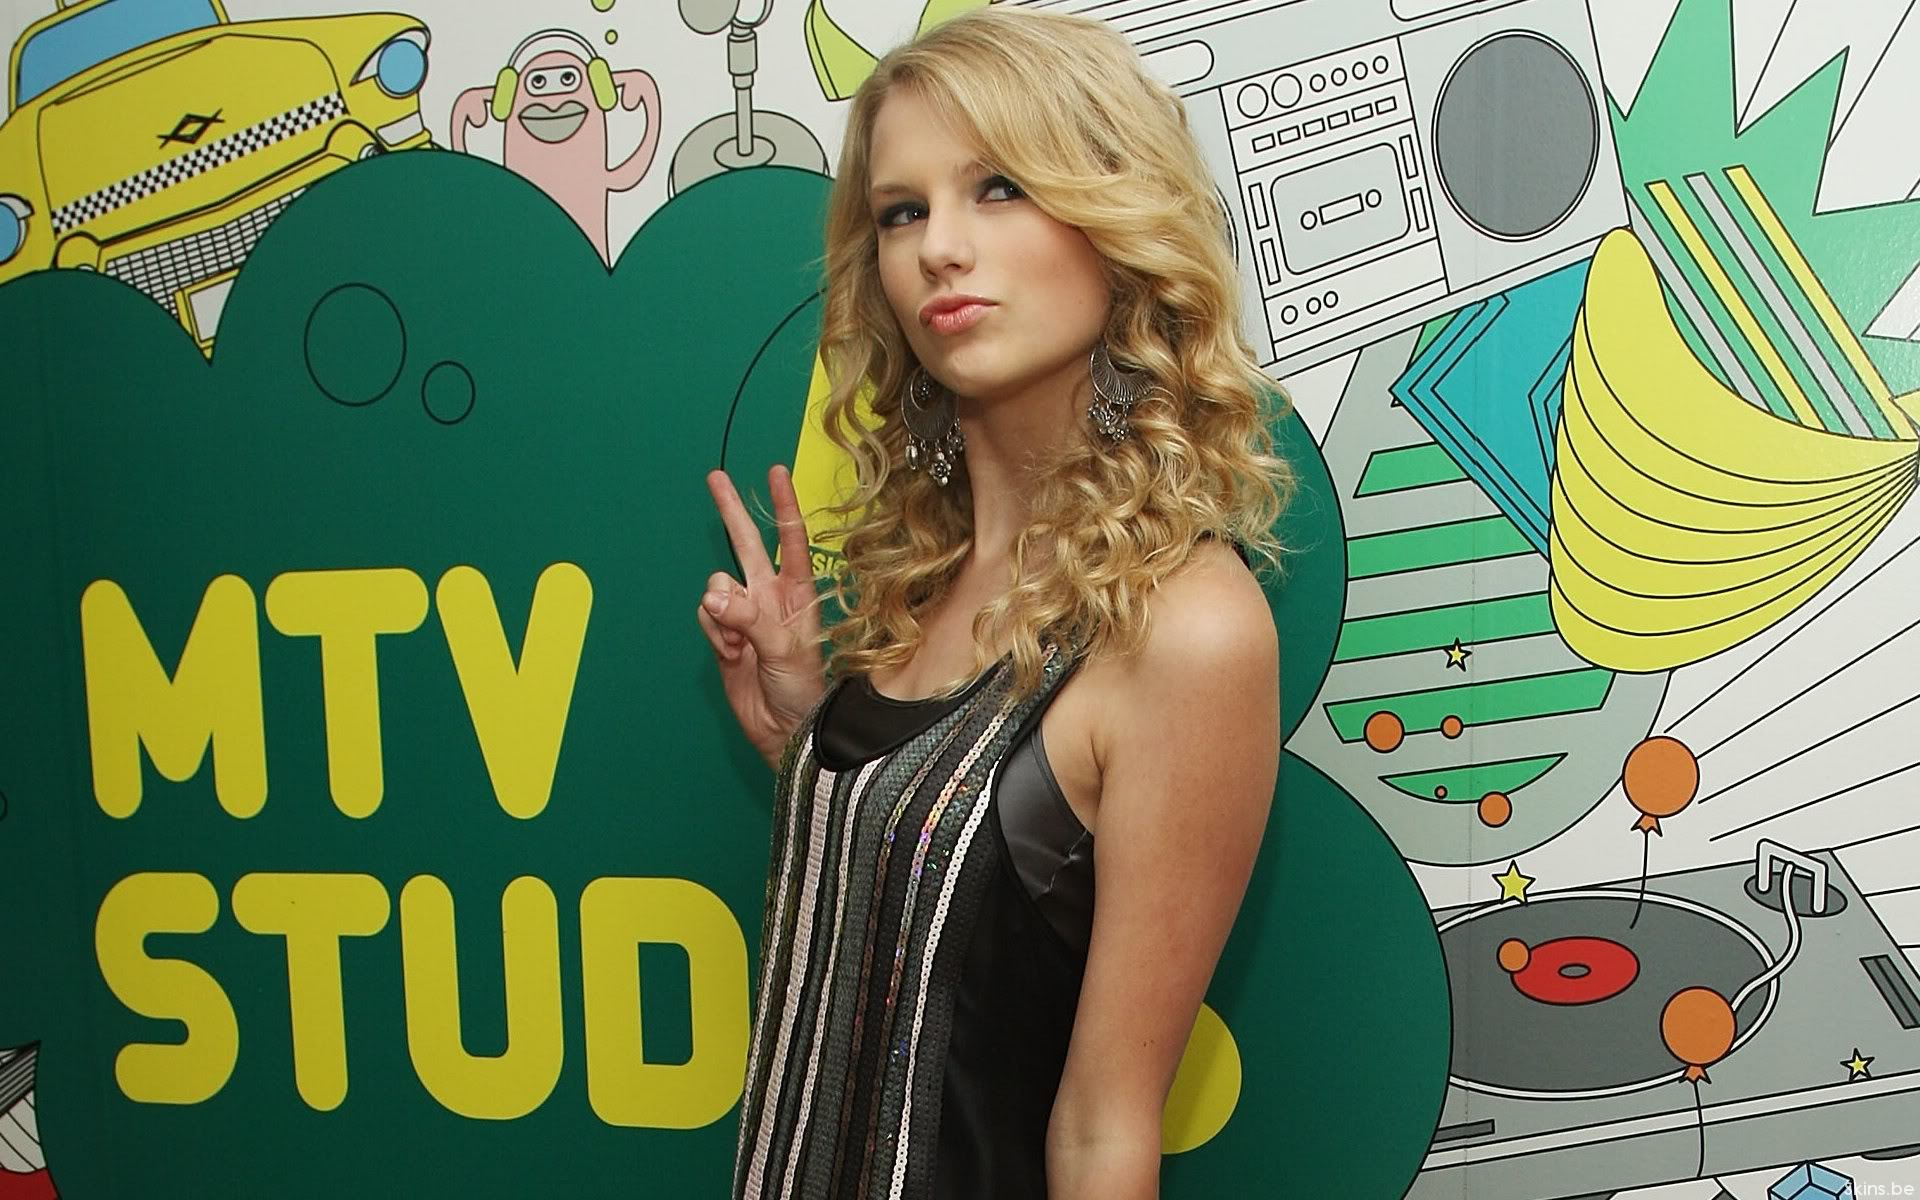 blondes, women, Taylor Swift, singers - desktop wallpaper